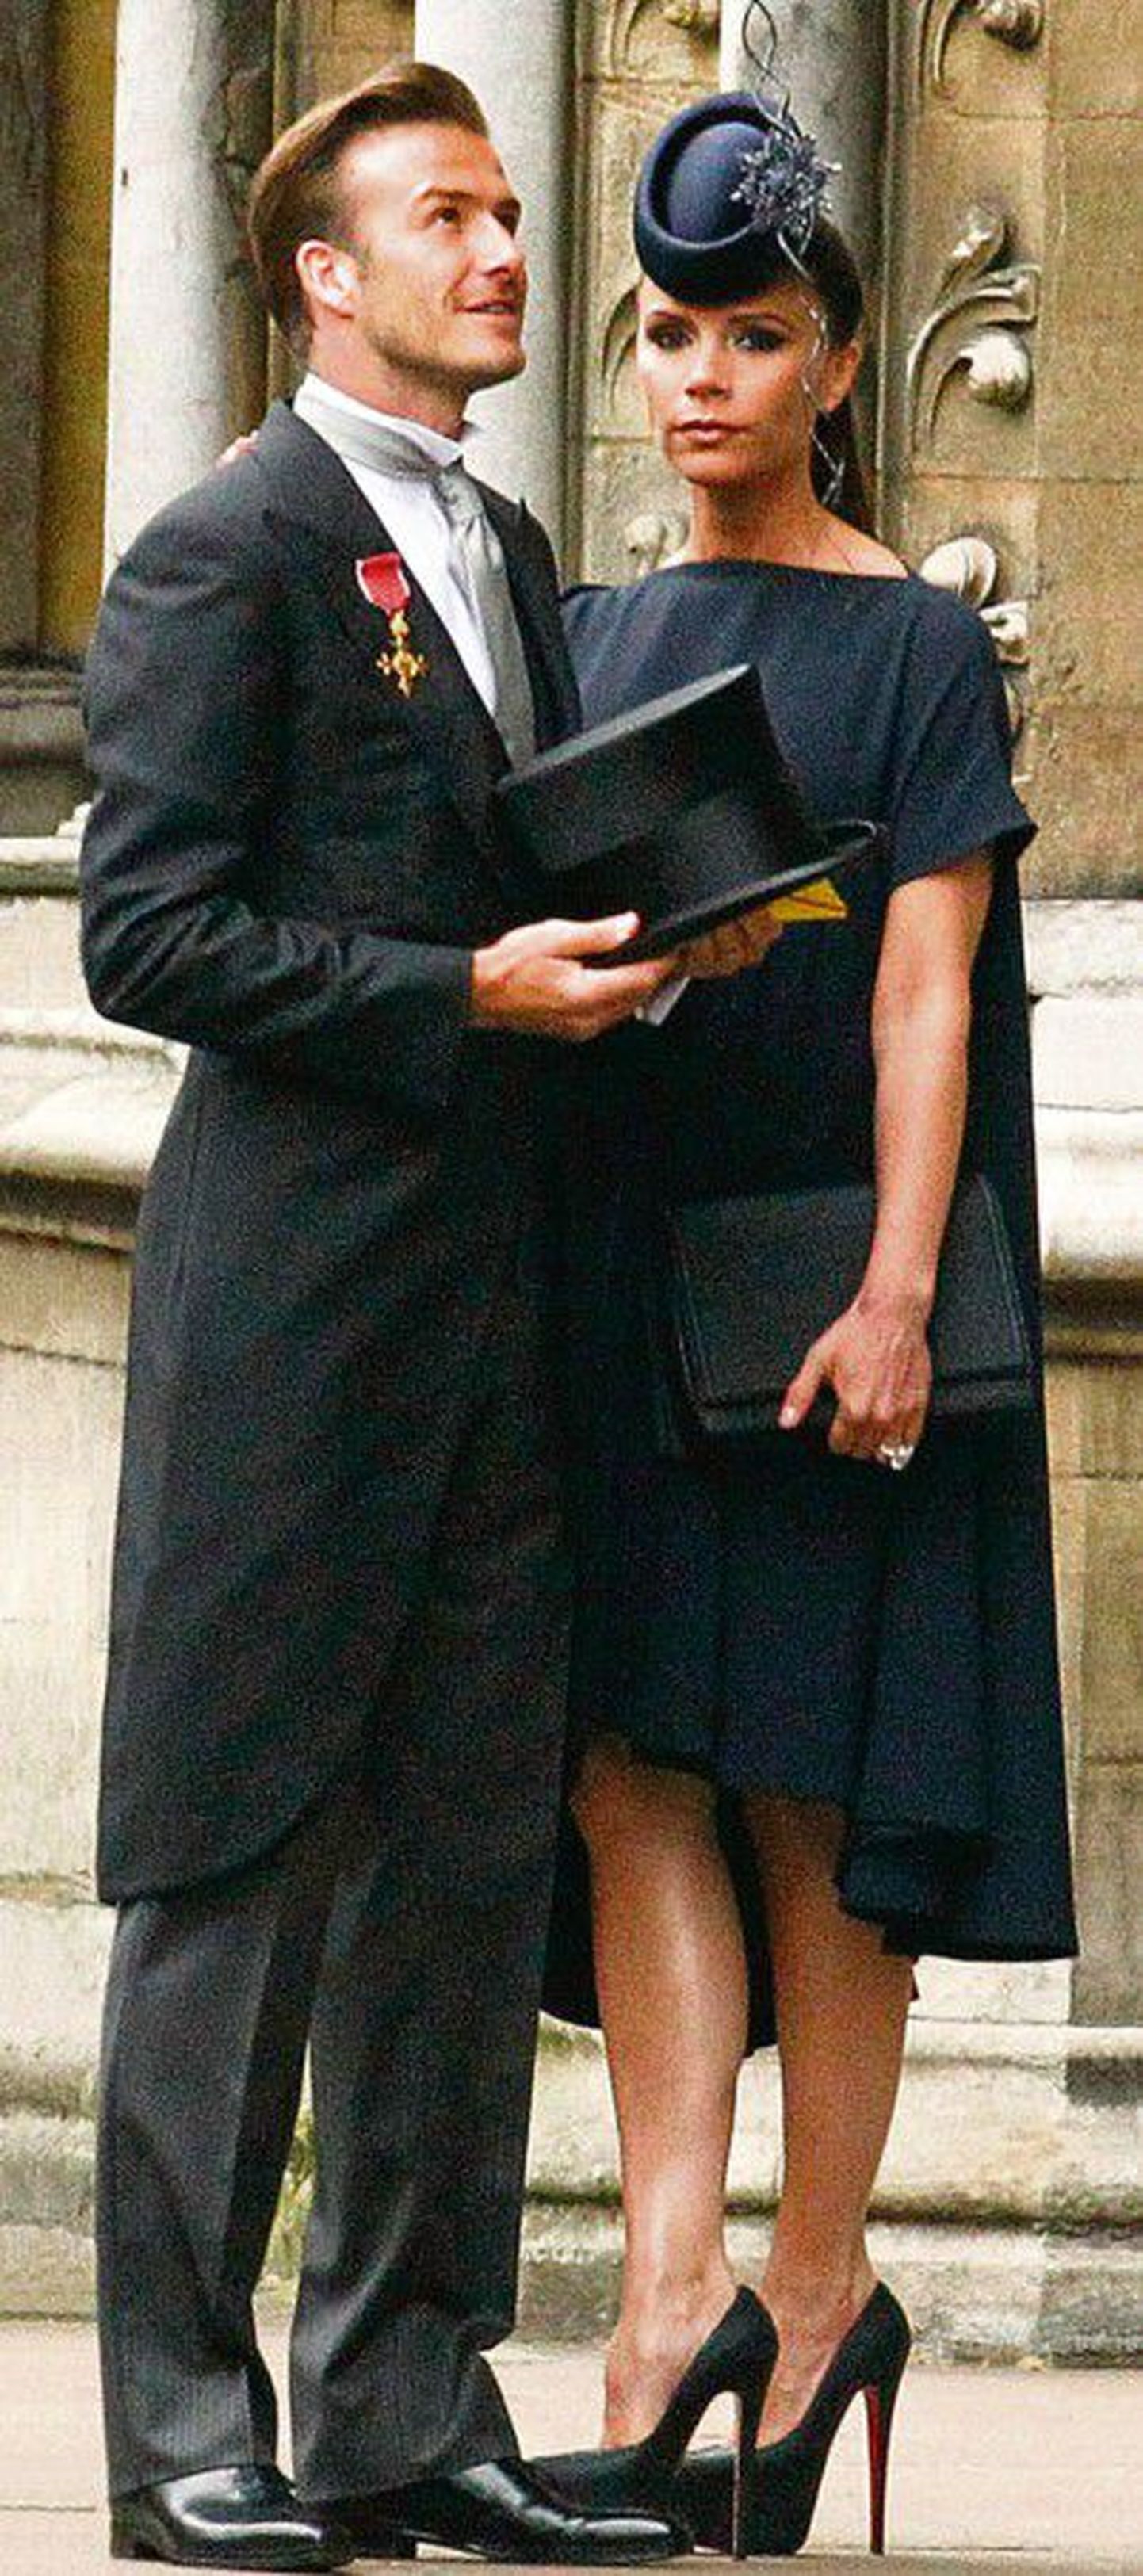 Daam mustas: hiljutisele kuninglikule laulatusele saabus beebiootel Victoria Beckham tumeda kleidi ja kübaraga, pälvides seetõttu paljude moeasjatundjate kriitikat.